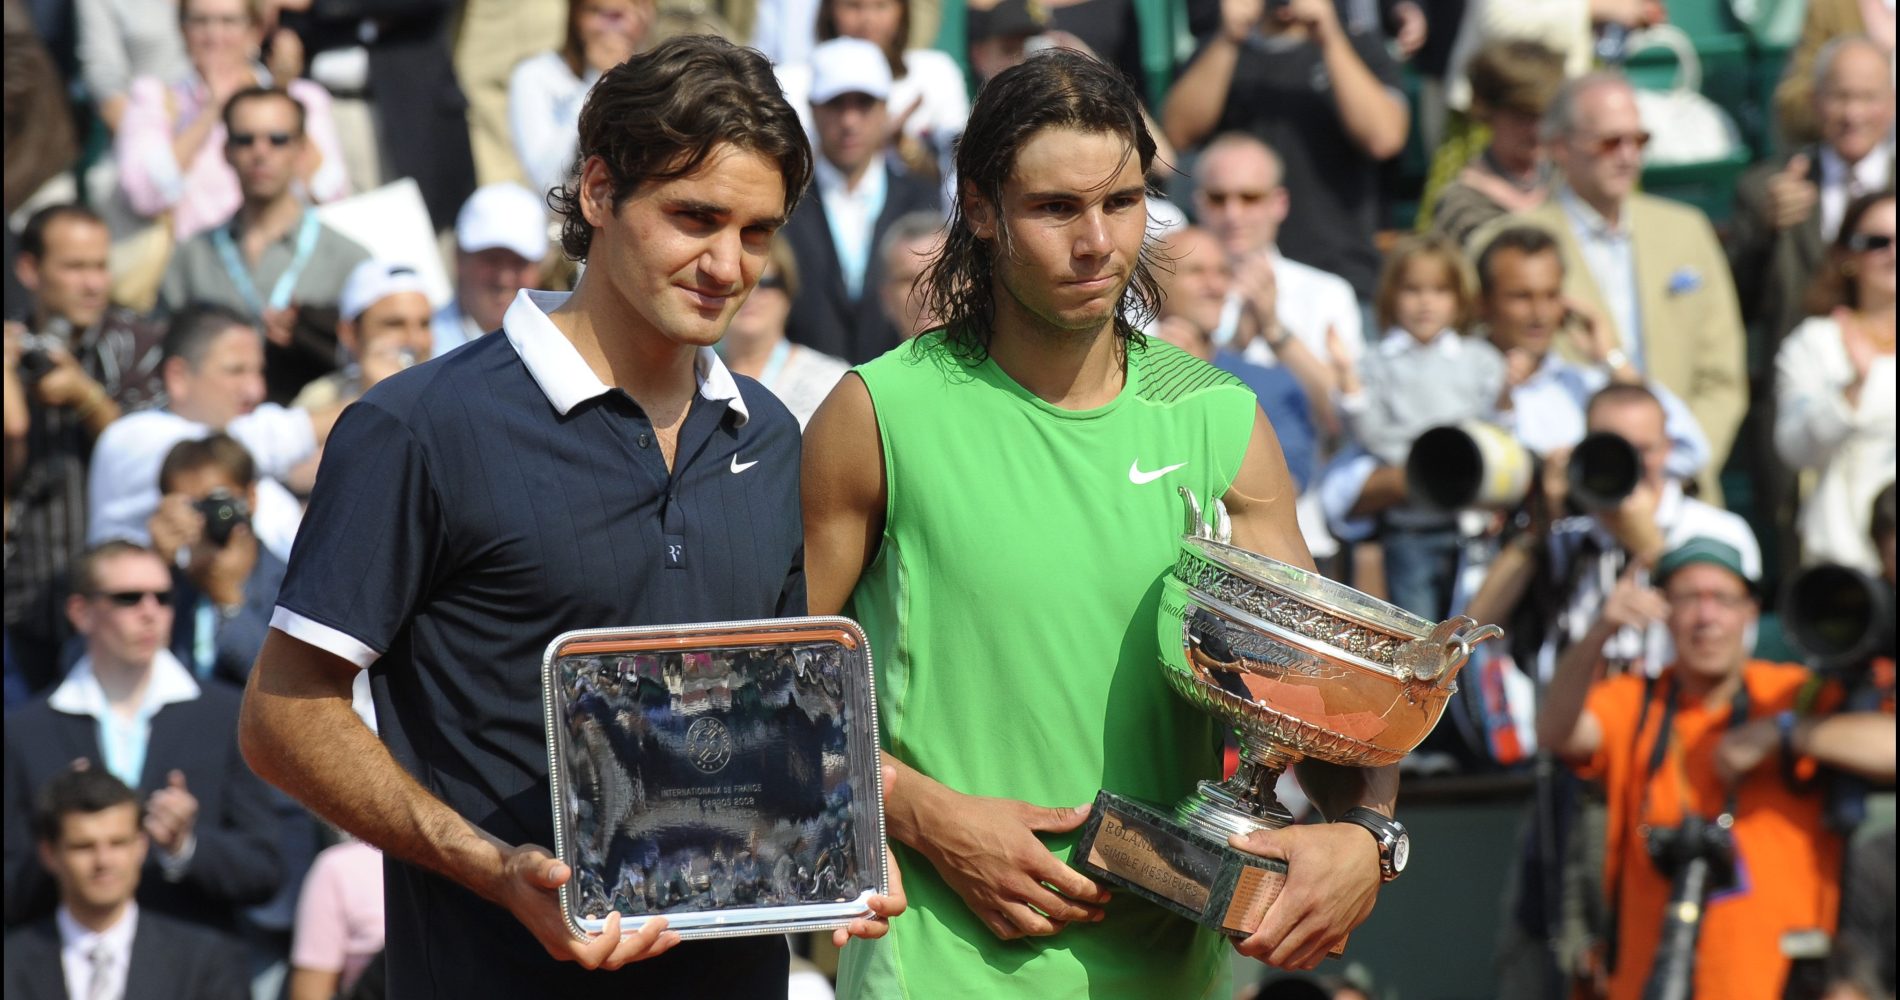 Federer won only 4 games vs Nadal at 2008 Roland Garros